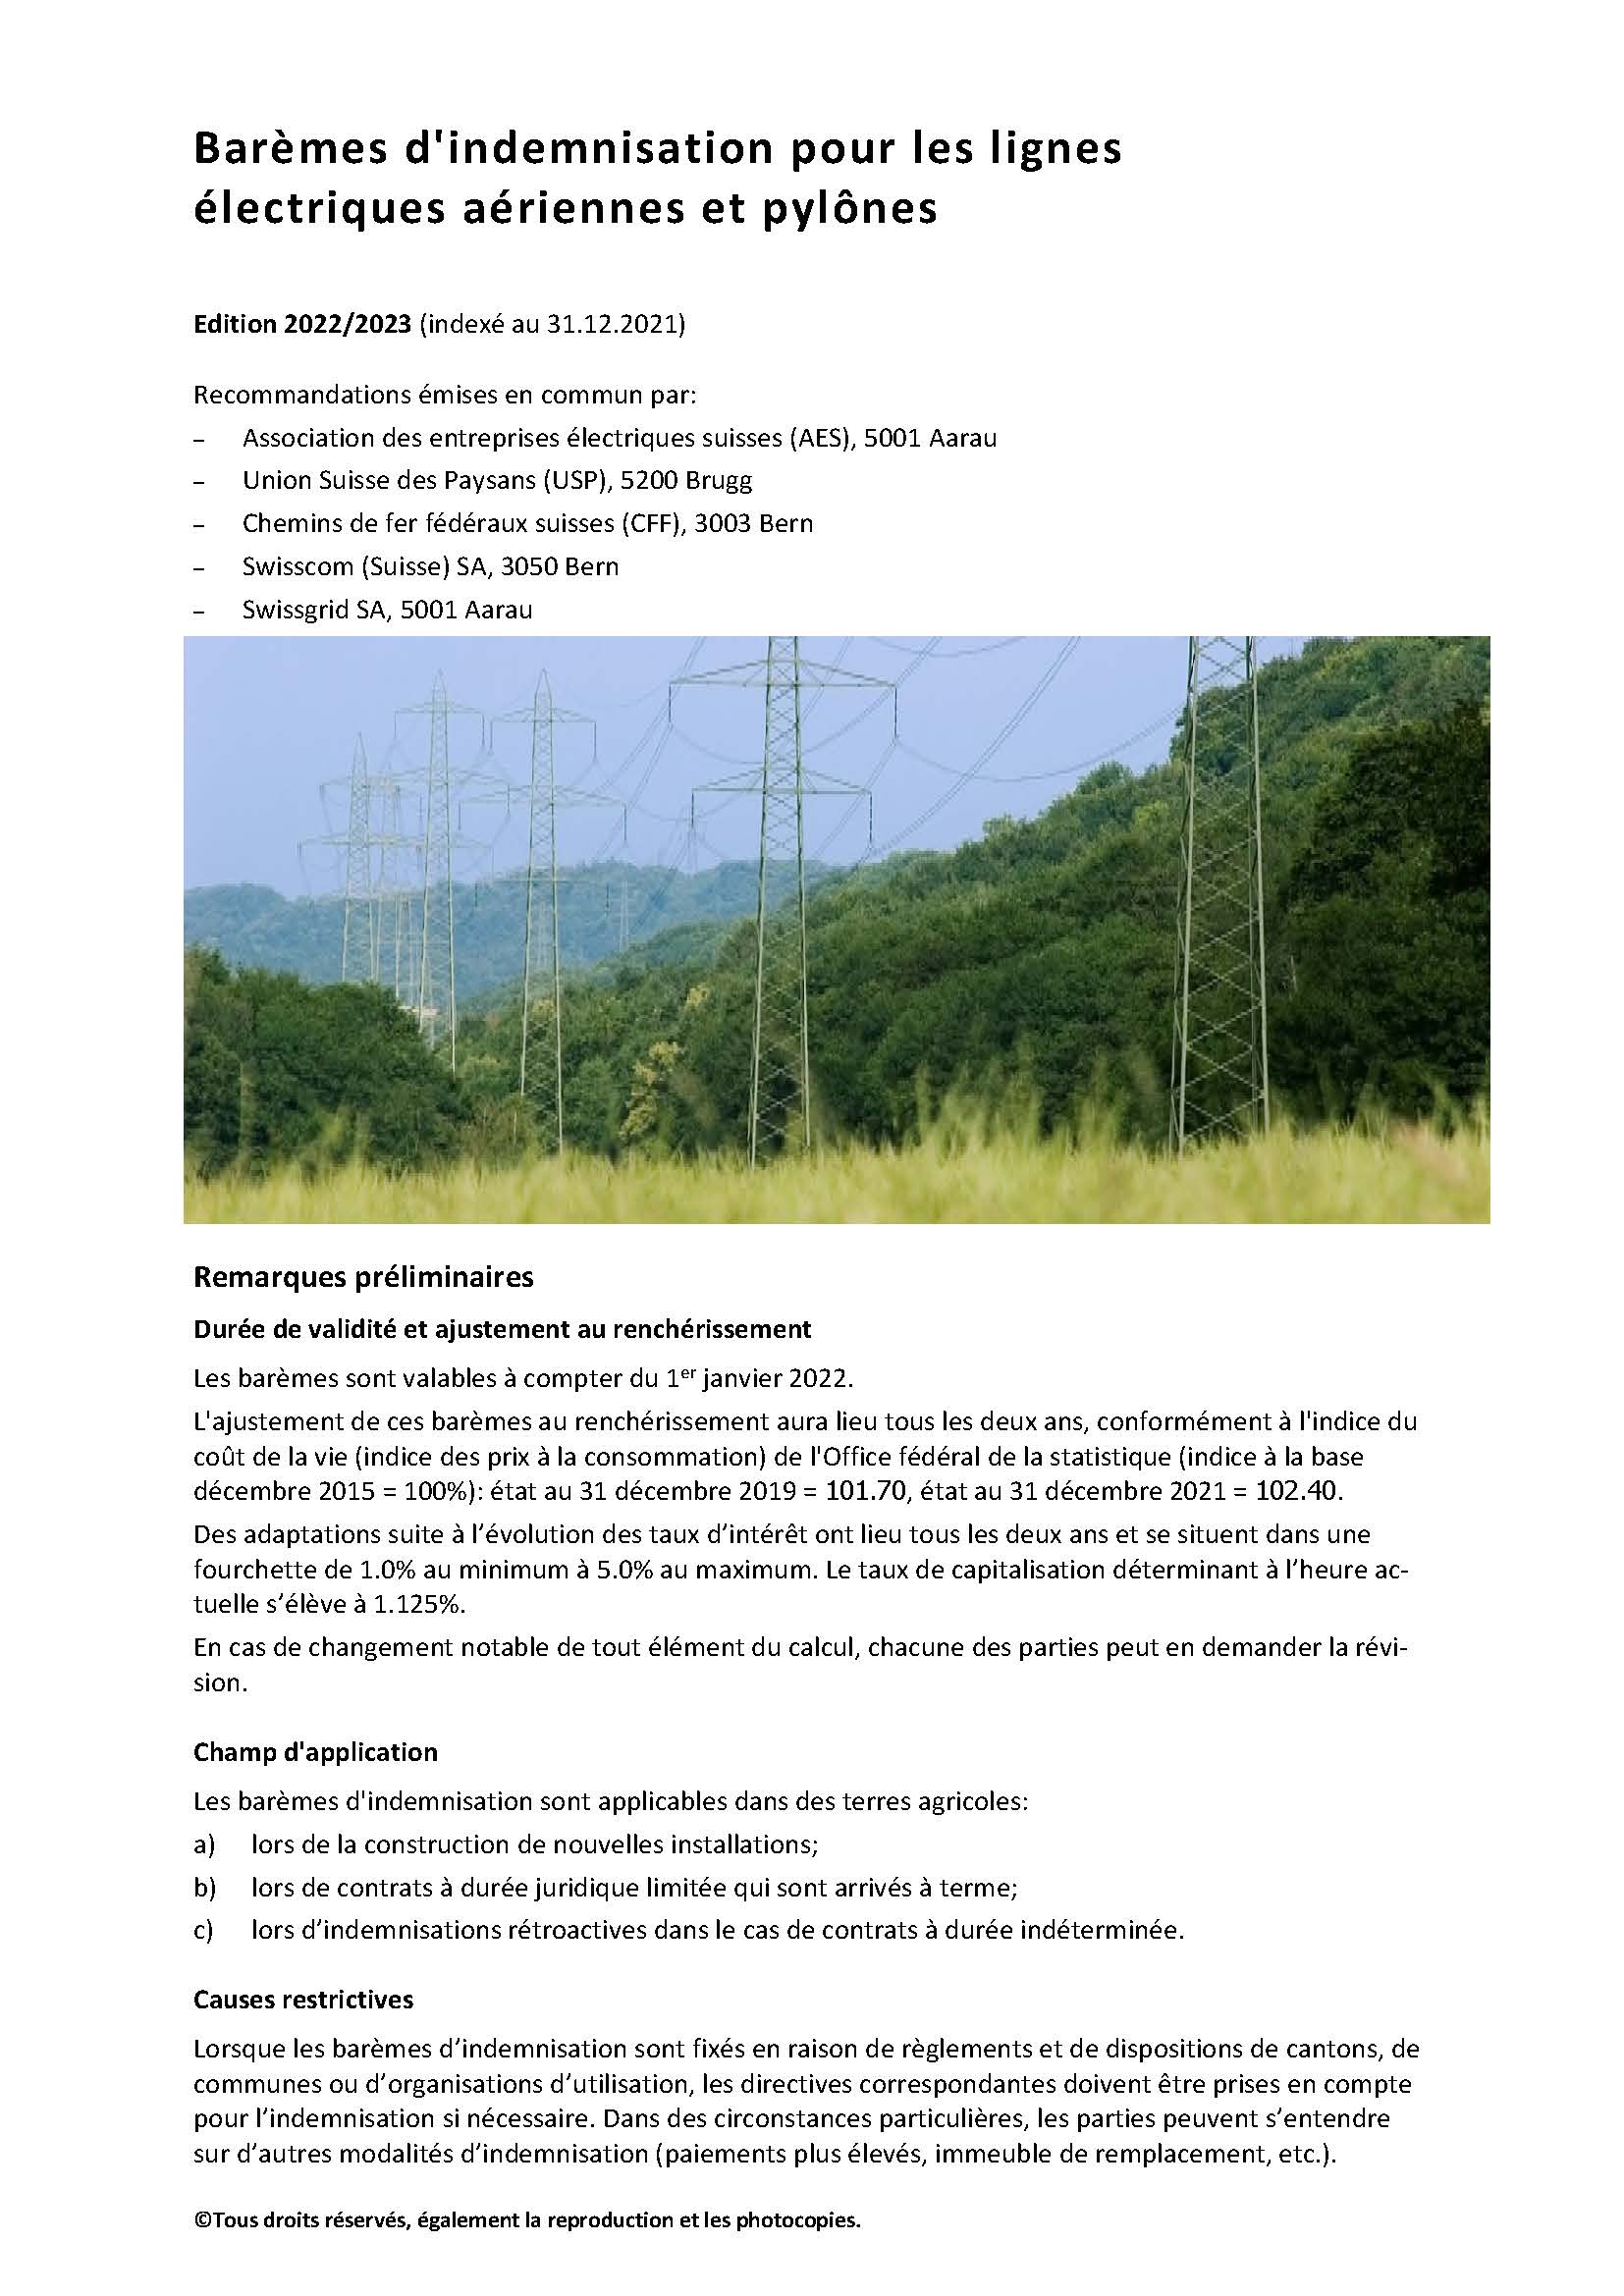 Barèmes d'indemnisation pour les lignes électriques aériennes et pylônes - Édition 2022/2023